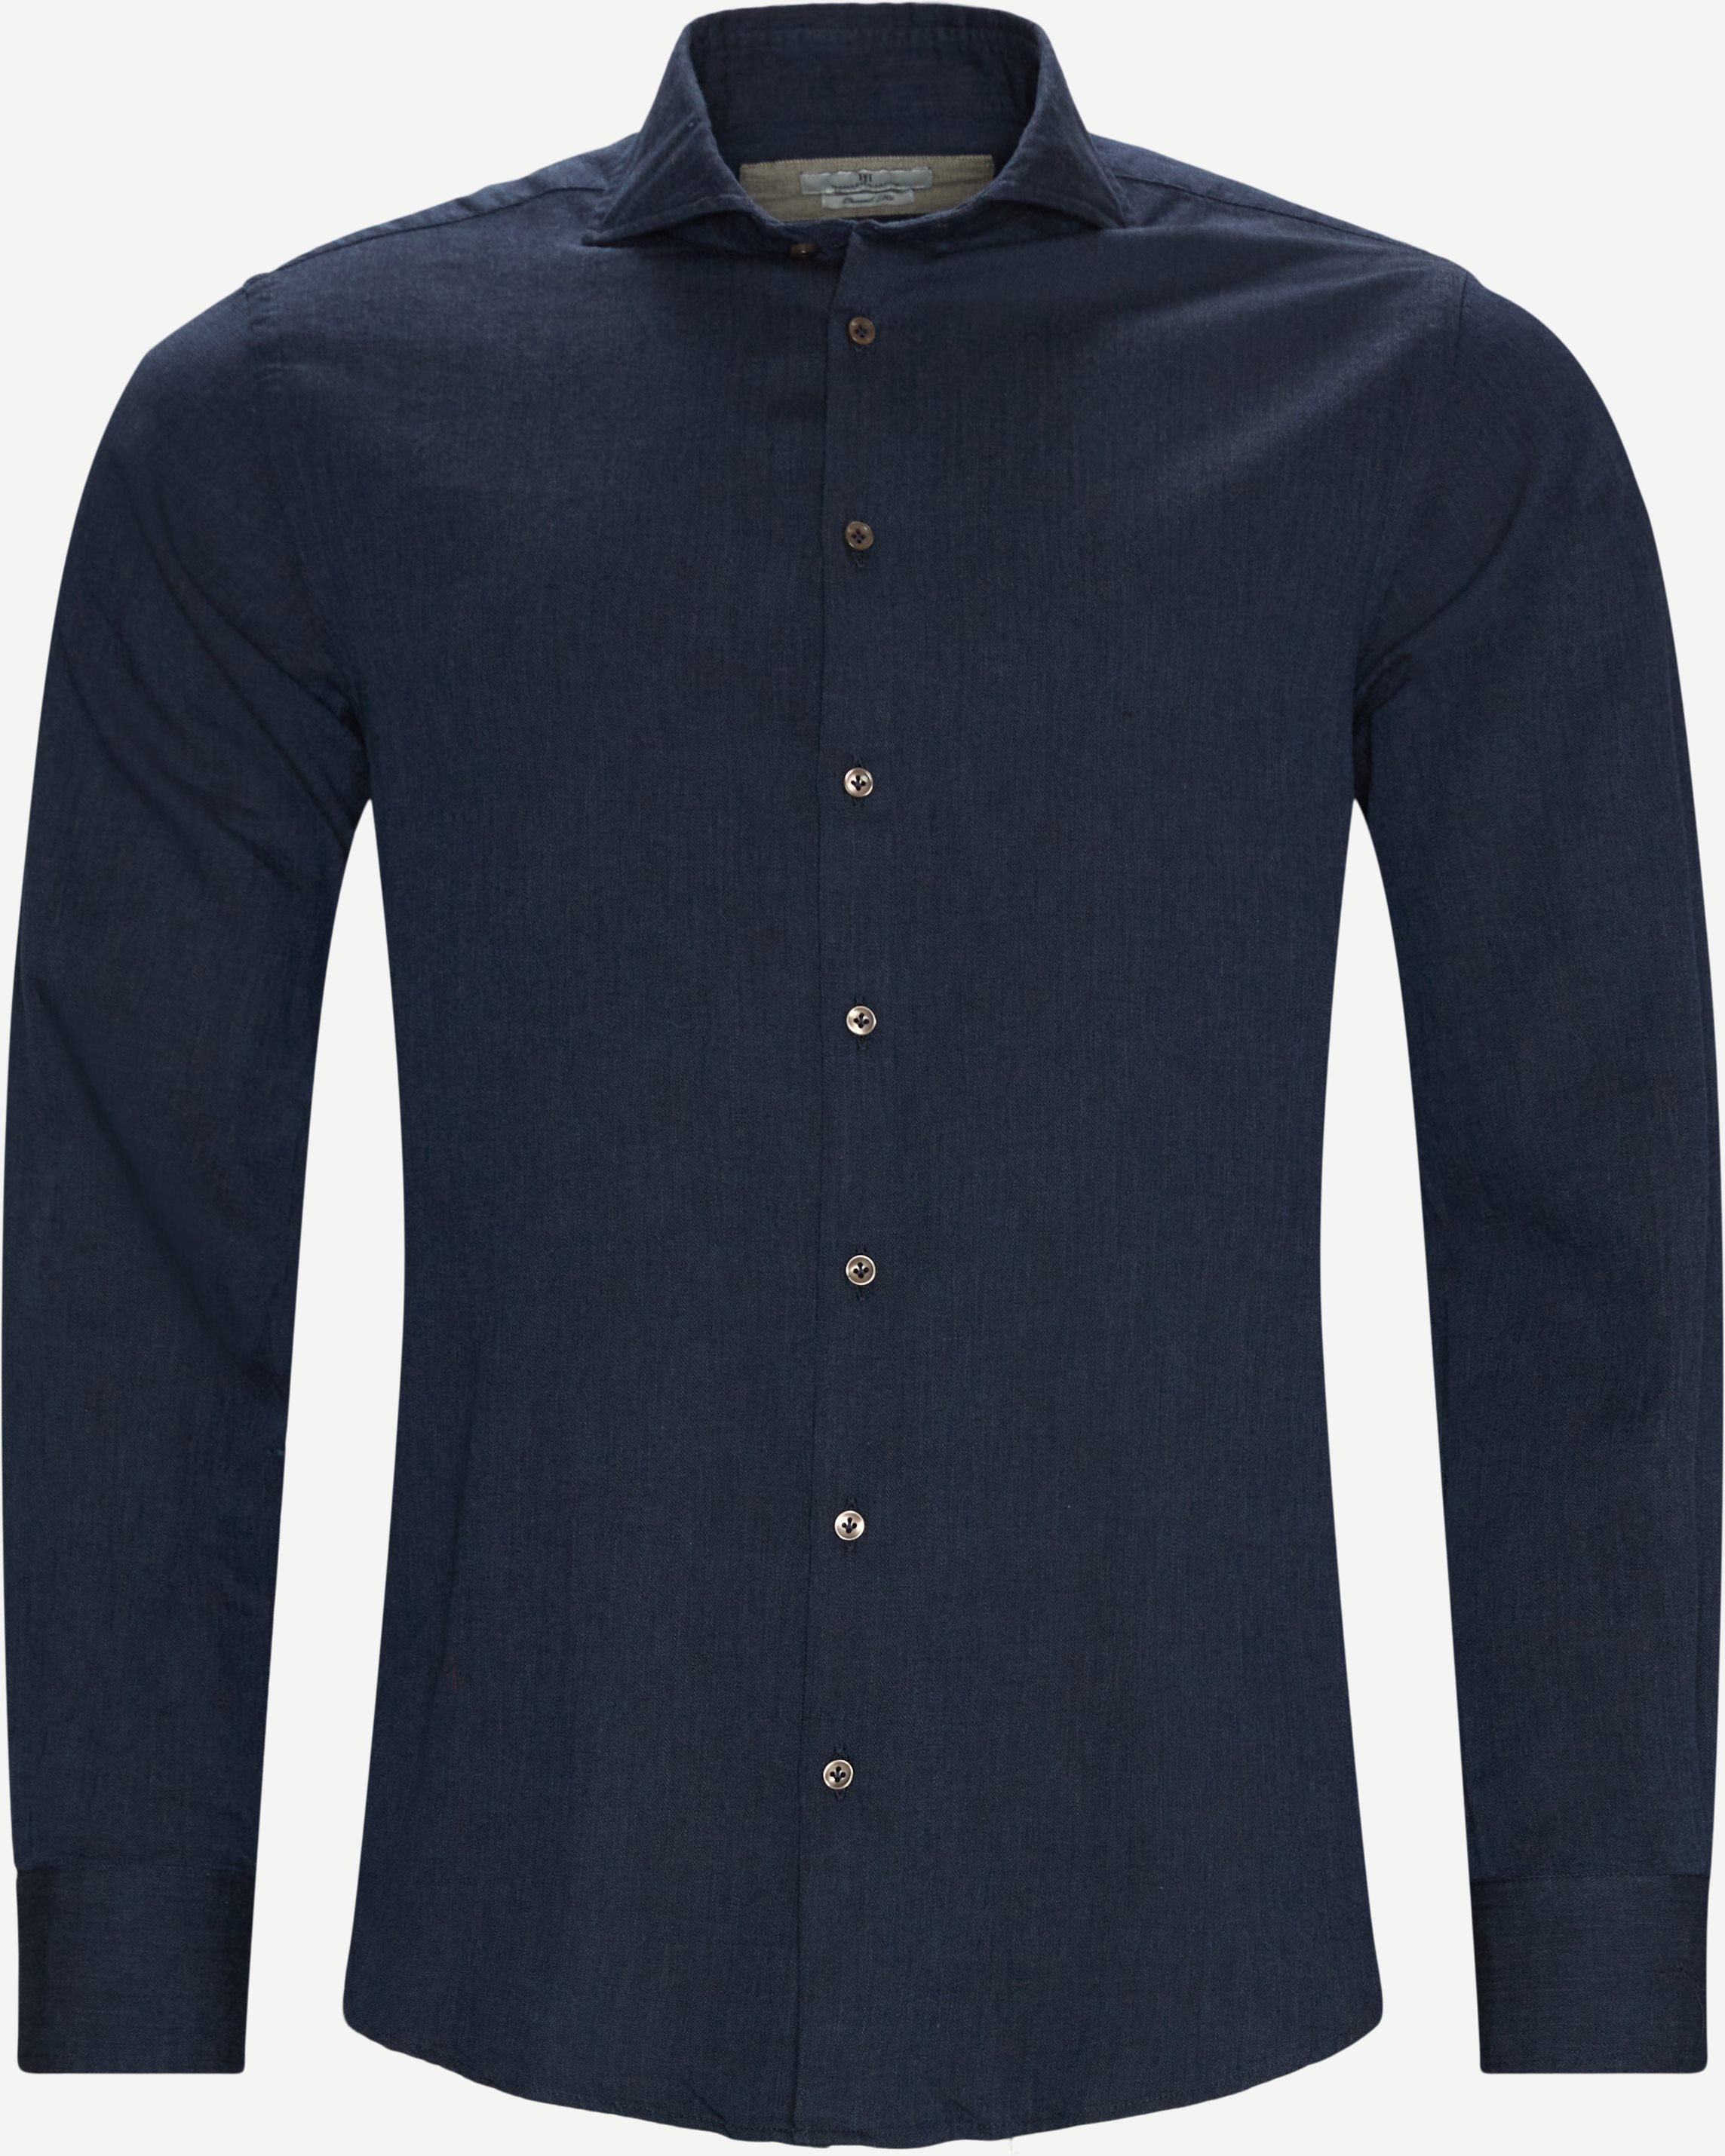 07122 Herringbone Soft Flannel Shirt - Skjorter - Casual fit - Blå